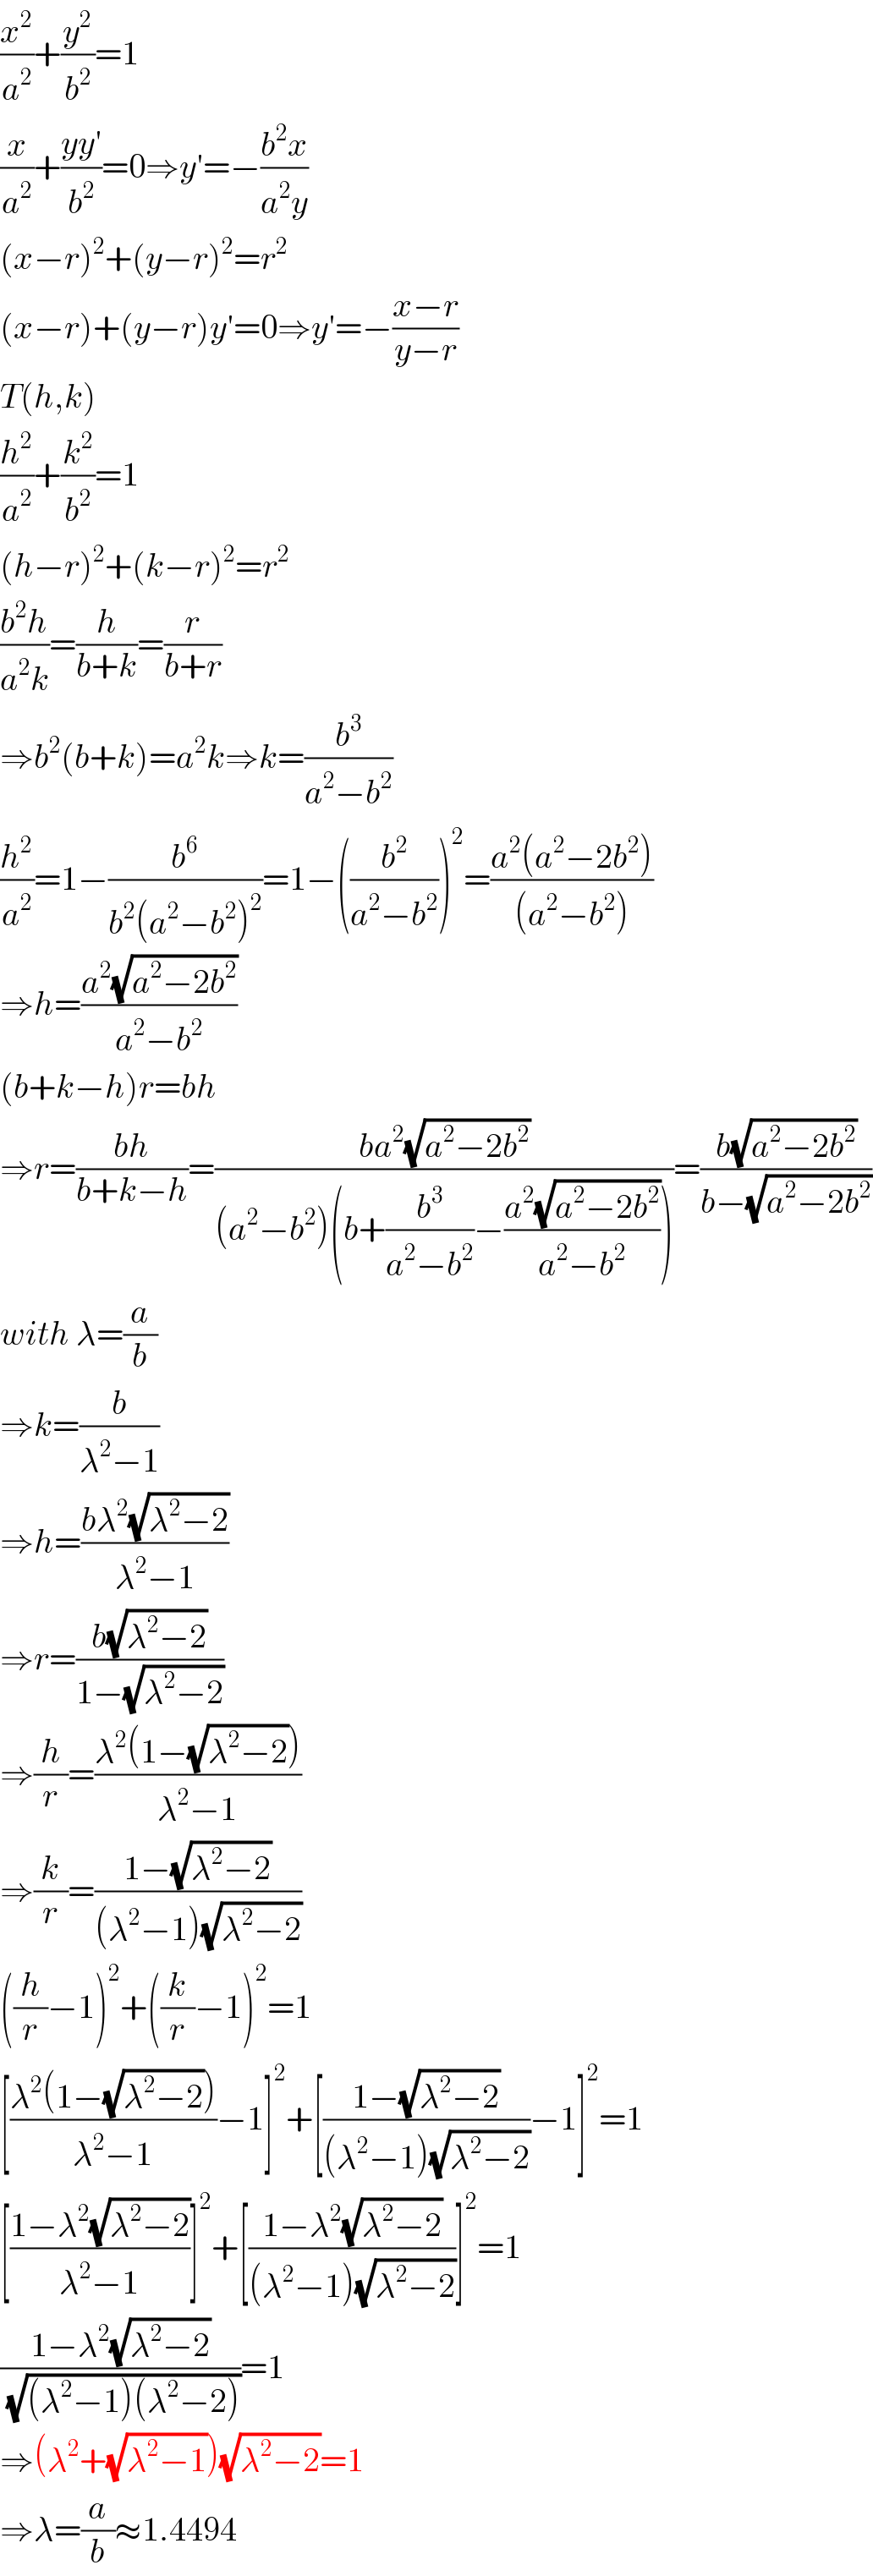 (x^2 /a^2 )+(y^2 /b^2 )=1  (x/a^2 )+((yy′)/b^2 )=0⇒y′=−((b^2 x)/(a^2 y))  (x−r)^2 +(y−r)^2 =r^2   (x−r)+(y−r)y′=0⇒y′=−((x−r)/(y−r))  T(h,k)  (h^2 /a^2 )+(k^2 /b^2 )=1  (h−r)^2 +(k−r)^2 =r^2   ((b^2 h)/(a^2 k))=(h/(b+k))=(r/(b+r))  ⇒b^2 (b+k)=a^2 k⇒k=(b^3 /(a^2 −b^2 ))  (h^2 /a^2 )=1−(b^6 /(b^2 (a^2 −b^2 )^2 ))=1−((b^2 /(a^2 −b^2 )))^2 =((a^2 (a^2 −2b^2 ))/((a^2 −b^2 )))  ⇒h=((a^2 (√(a^2 −2b^2 )))/(a^2 −b^2 ))  (b+k−h)r=bh  ⇒r=((bh)/(b+k−h))=((ba^2 (√(a^2 −2b^2 )))/((a^2 −b^2 )(b+(b^3 /(a^2 −b^2 ))−((a^2 (√(a^2 −2b^2 )))/(a^2 −b^2 )))))=((b(√(a^2 −2b^2 )))/(b−(√(a^2 −2b^2 ))))  with λ=(a/b)  ⇒k=(b/(λ^2 −1))  ⇒h=((bλ^2 (√(λ^2 −2)))/(λ^2 −1))  ⇒r=((b(√(λ^2 −2)))/(1−(√(λ^2 −2))))  ⇒(h/r)=((λ^2 (1−(√(λ^2 −2))))/(λ^2 −1))  ⇒(k/r)=((1−(√(λ^2 −2)))/((λ^2 −1)(√(λ^2 −2))))  ((h/r)−1)^2 +((k/r)−1)^2 =1  [((λ^2 (1−(√(λ^2 −2))))/(λ^2 −1))−1]^2 +[((1−(√(λ^2 −2)))/((λ^2 −1)(√(λ^2 −2))))−1]^2 =1  [((1−λ^2 (√(λ^2 −2)))/(λ^2 −1))]^2 +[((1−λ^2 (√(λ^2 −2)))/((λ^2 −1)(√(λ^2 −2))))]^2 =1  ((1−λ^2 (√(λ^2 −2)))/(√((λ^2 −1)(λ^2 −2))))=1  ⇒(λ^2 +(√(λ^2 −1)))(√(λ^2 −2))=1  ⇒λ=(a/b)≈1.4494  